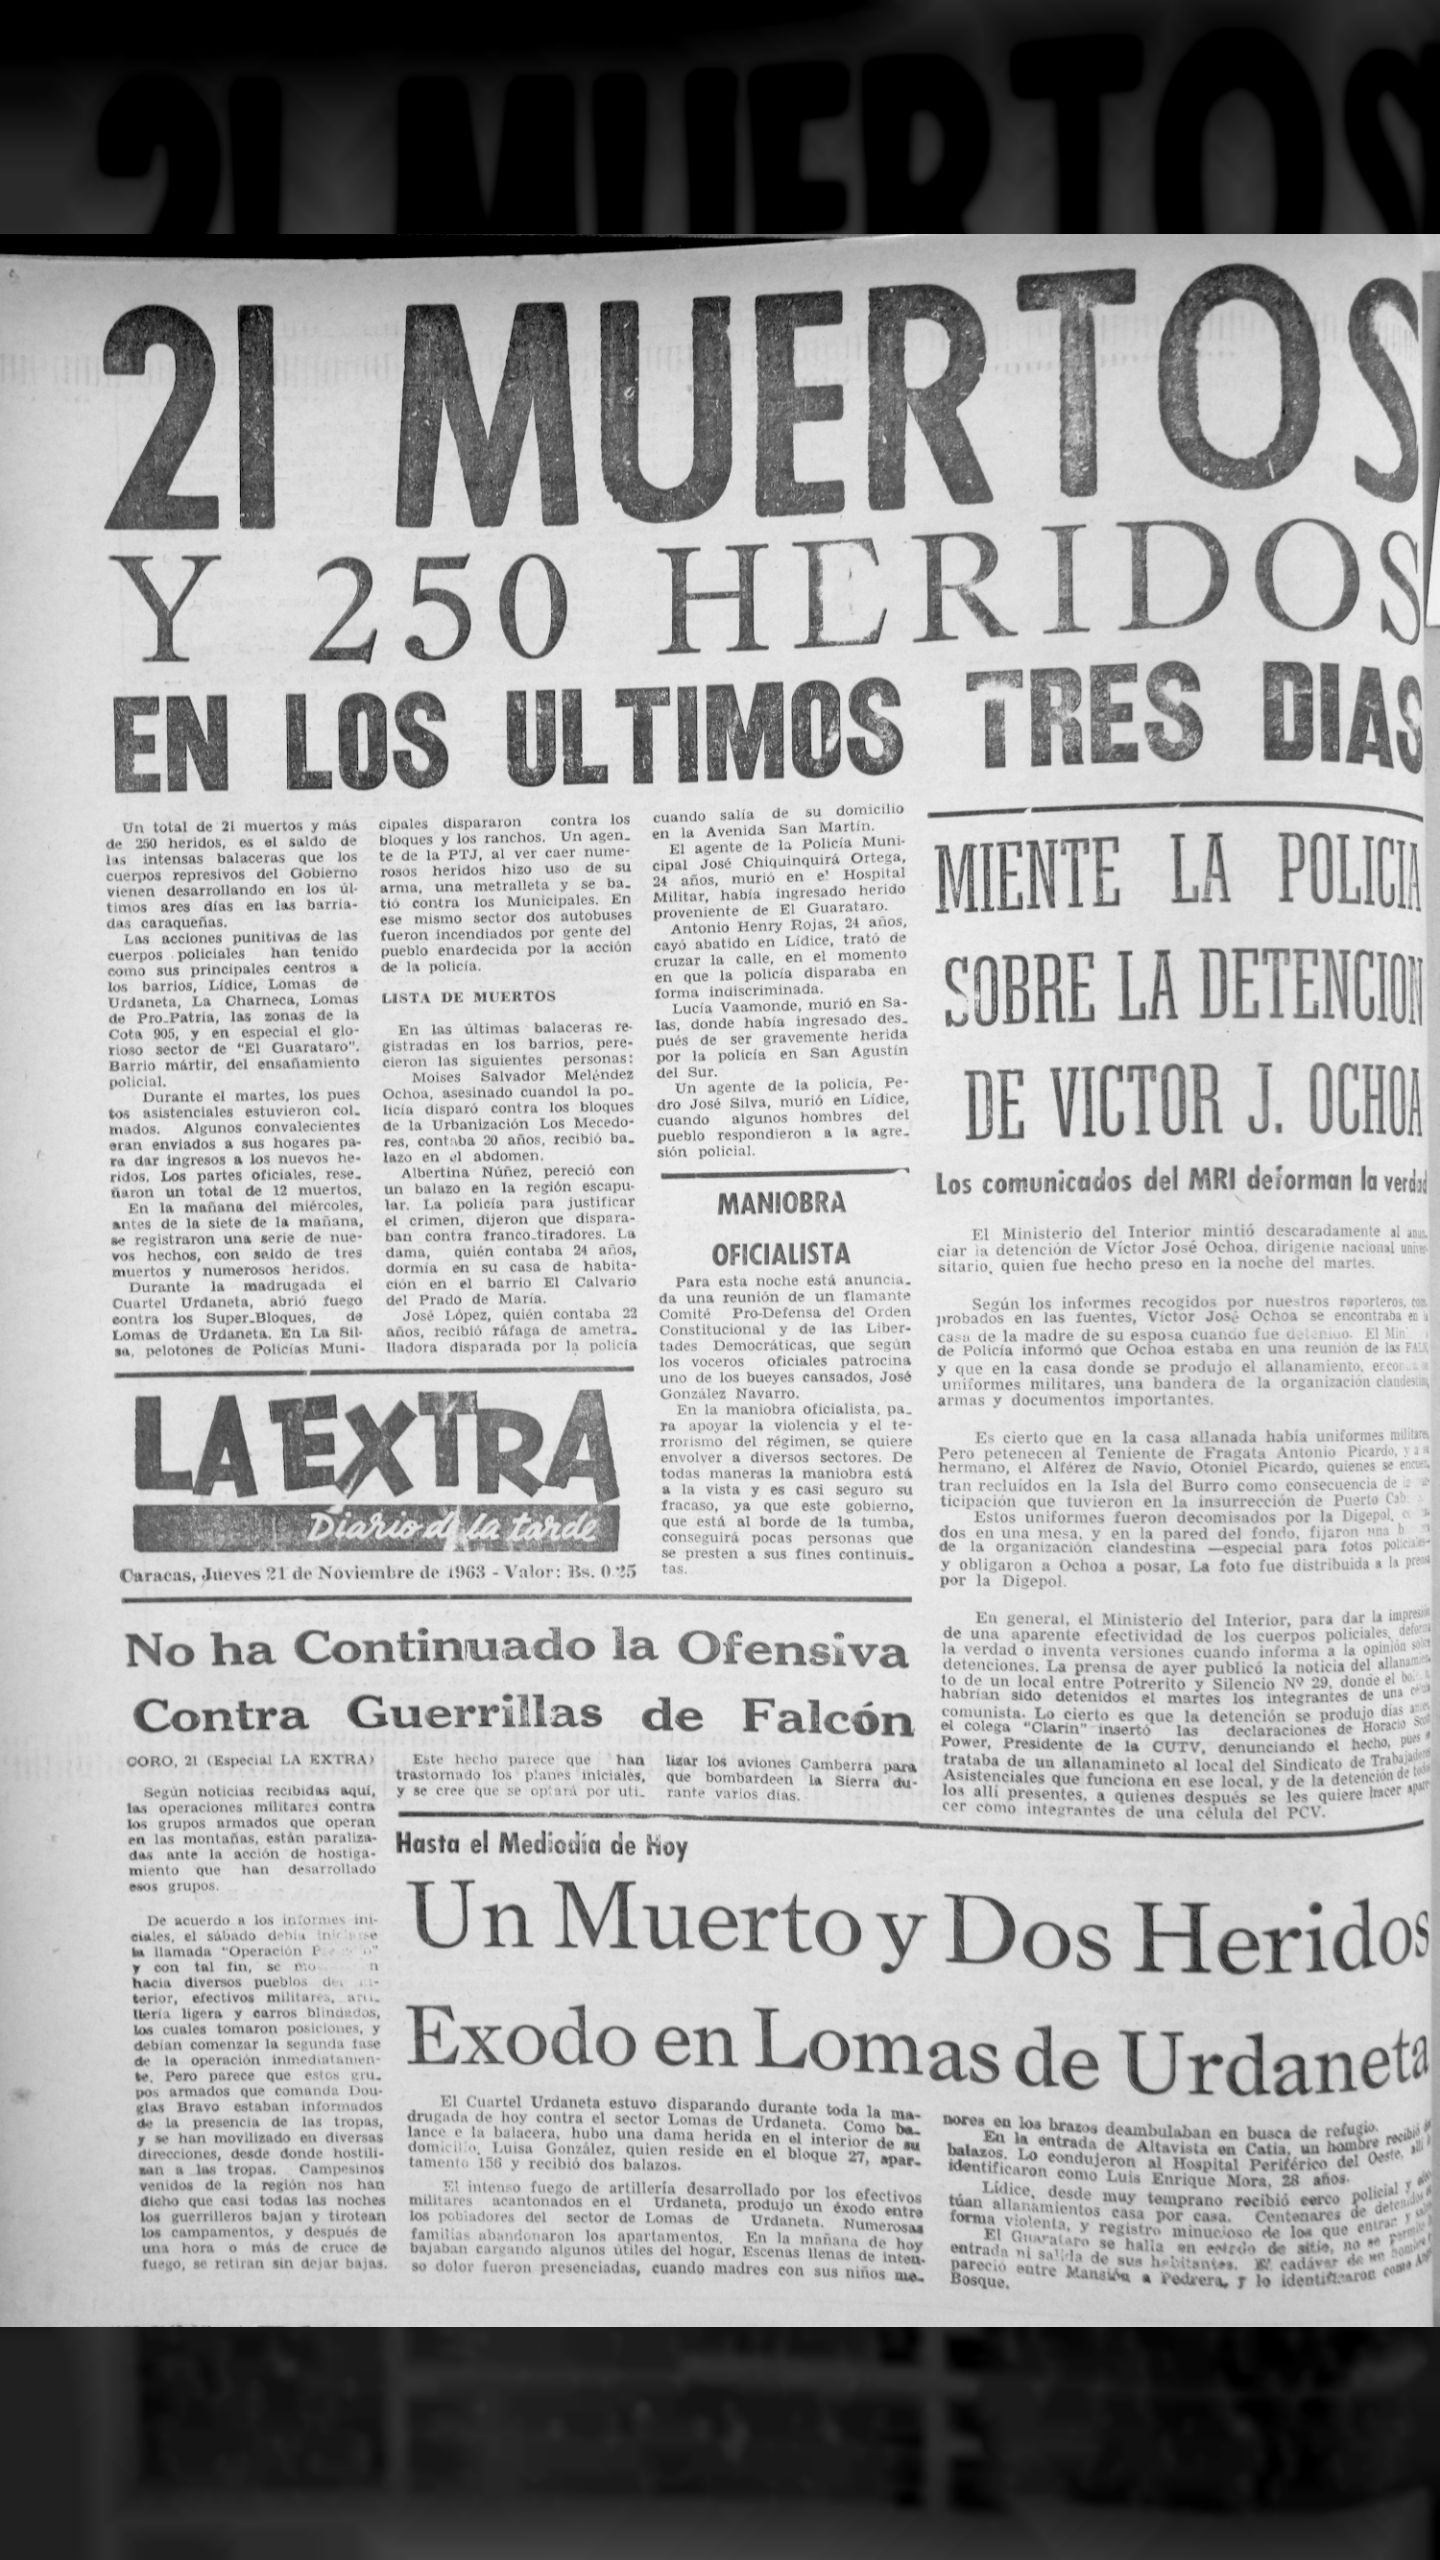 21 muertos y 250 heridos en los últimos tres días (La Extra, 21 de noviembre 1963)